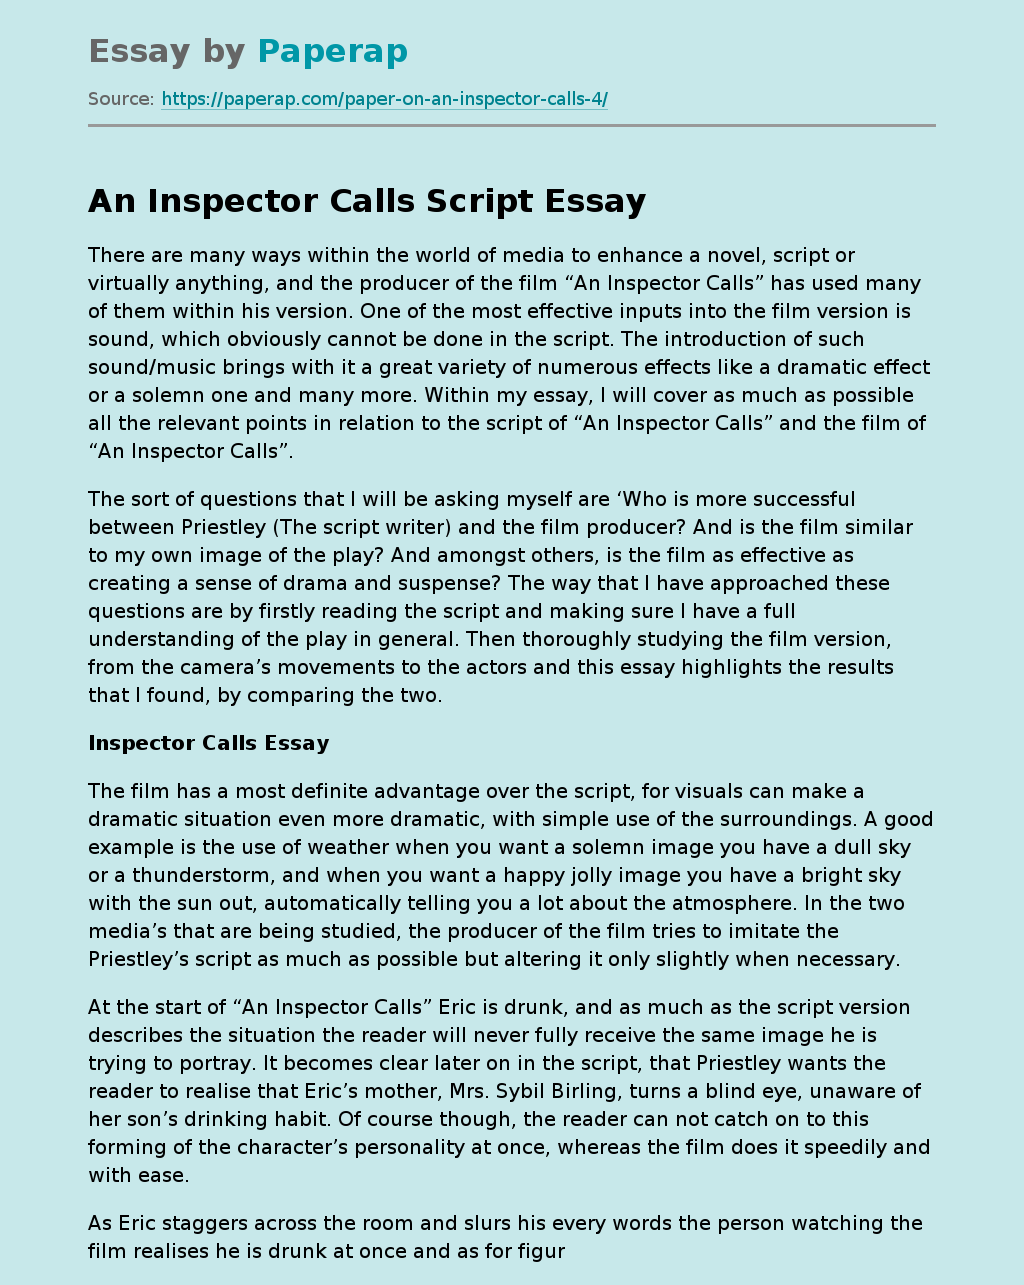 An Inspector Calls Script